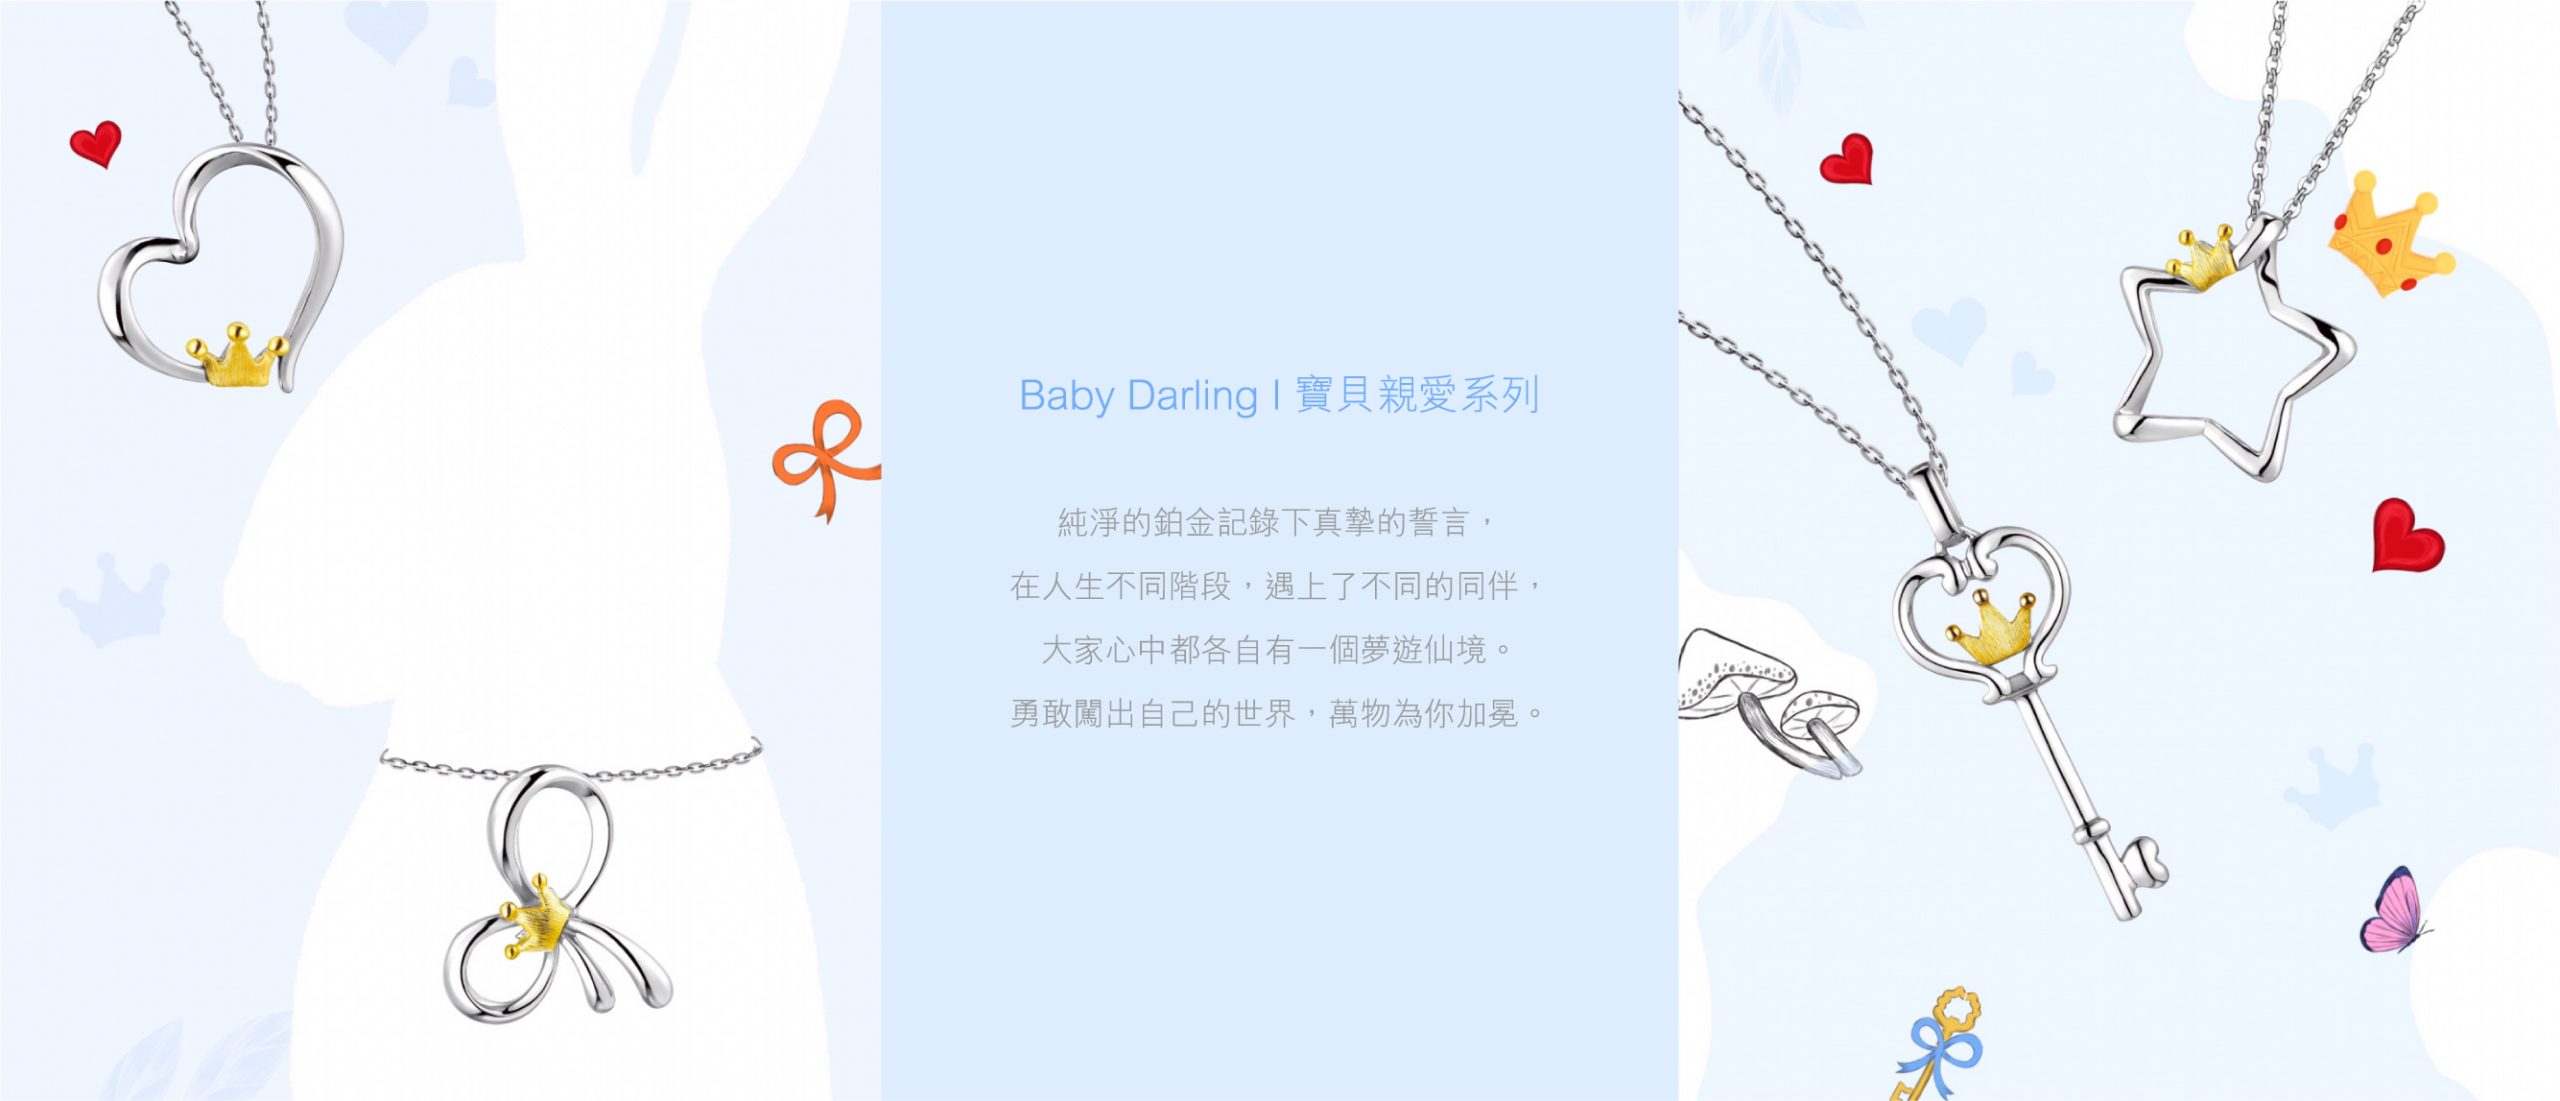 六福珠寶 - Pt Baby Darling | 寶貝親愛系列  Banner